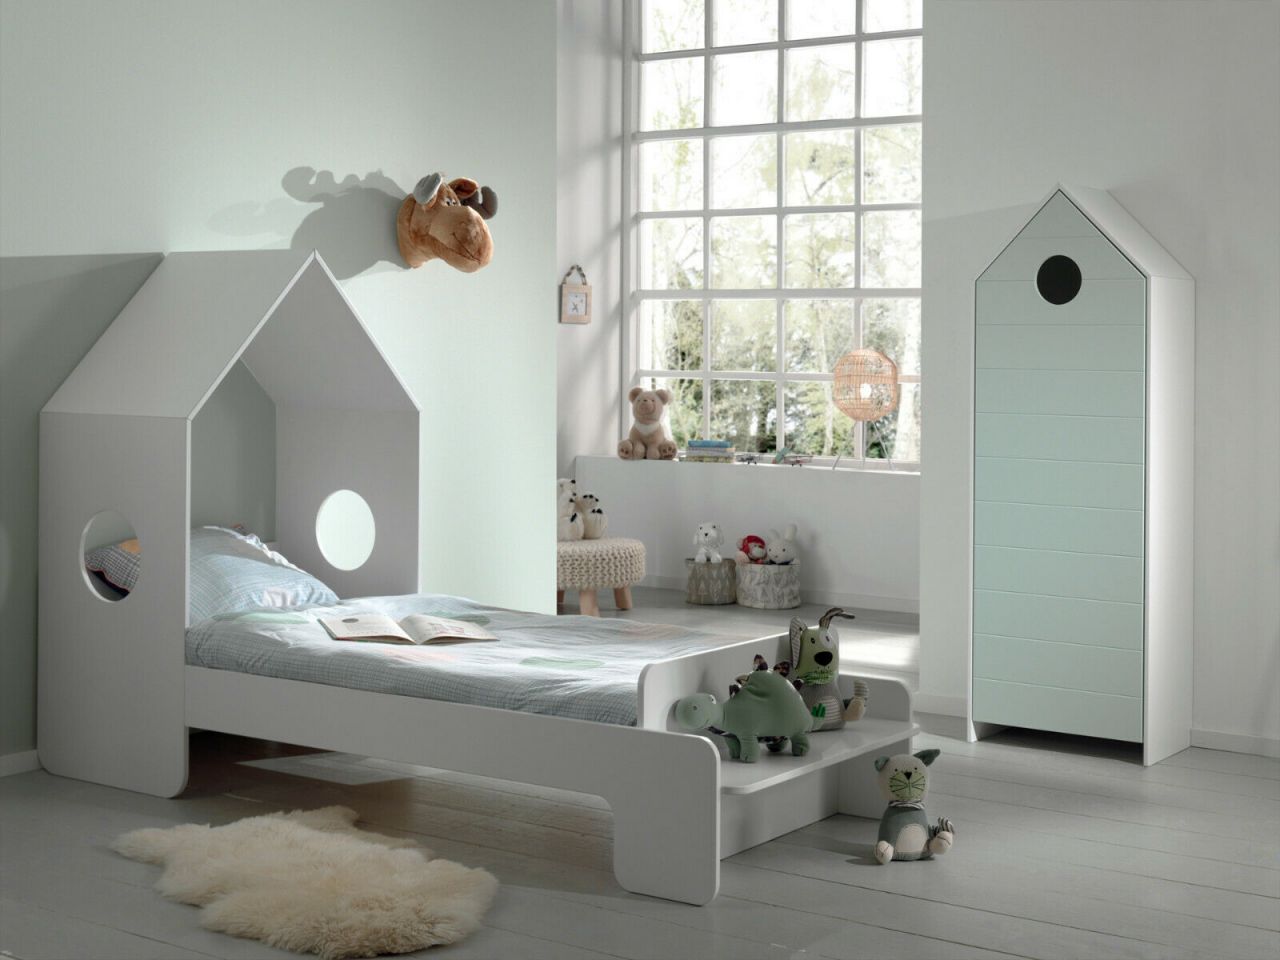 Vipack: Artikelset „CASAMI“ 2- Teilig- Kinderbett Wäscheschrank -Weiß / Mint